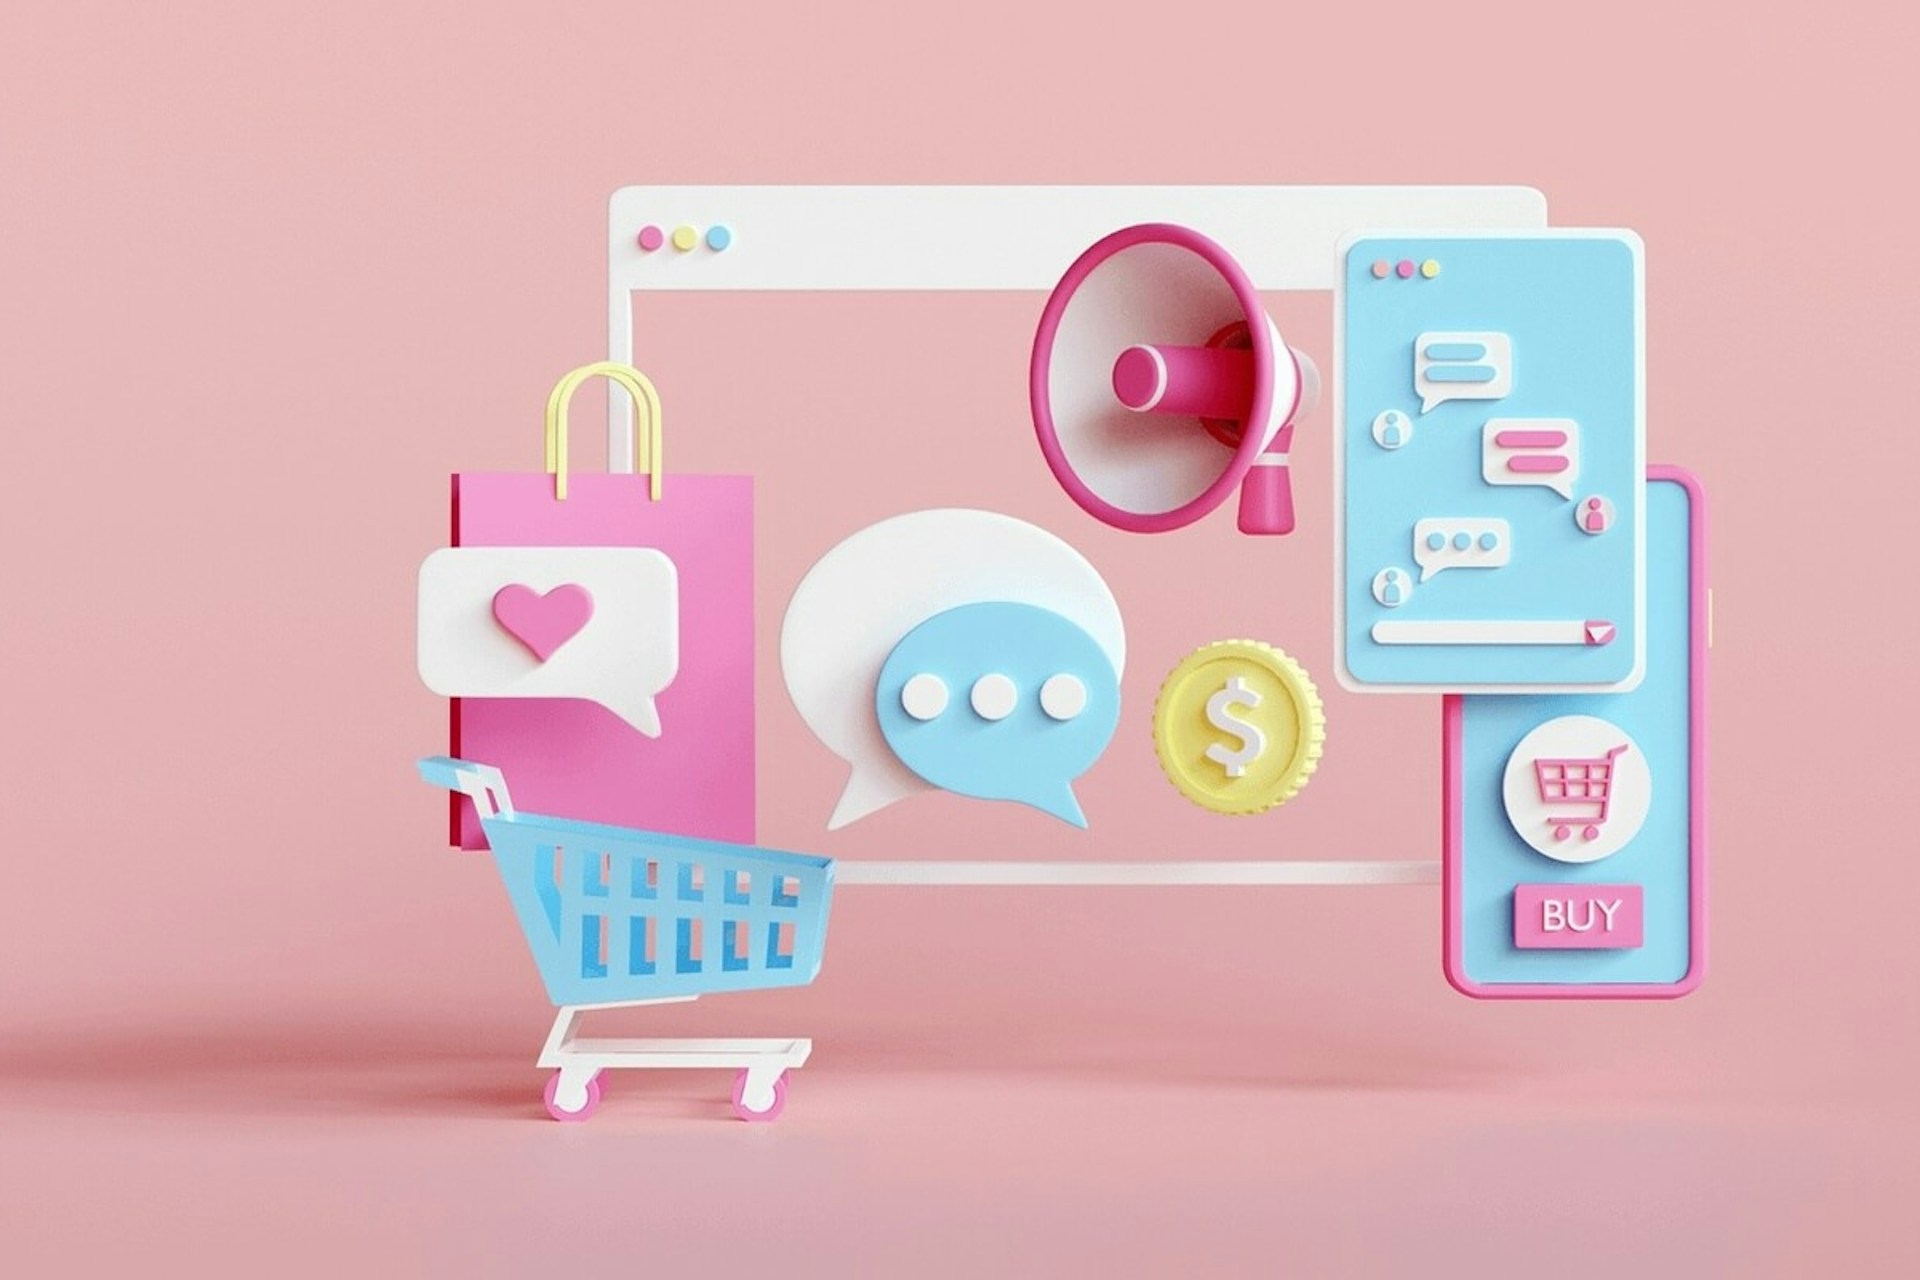 3D Illustration of icons showcasing ecommerce influencer marketing